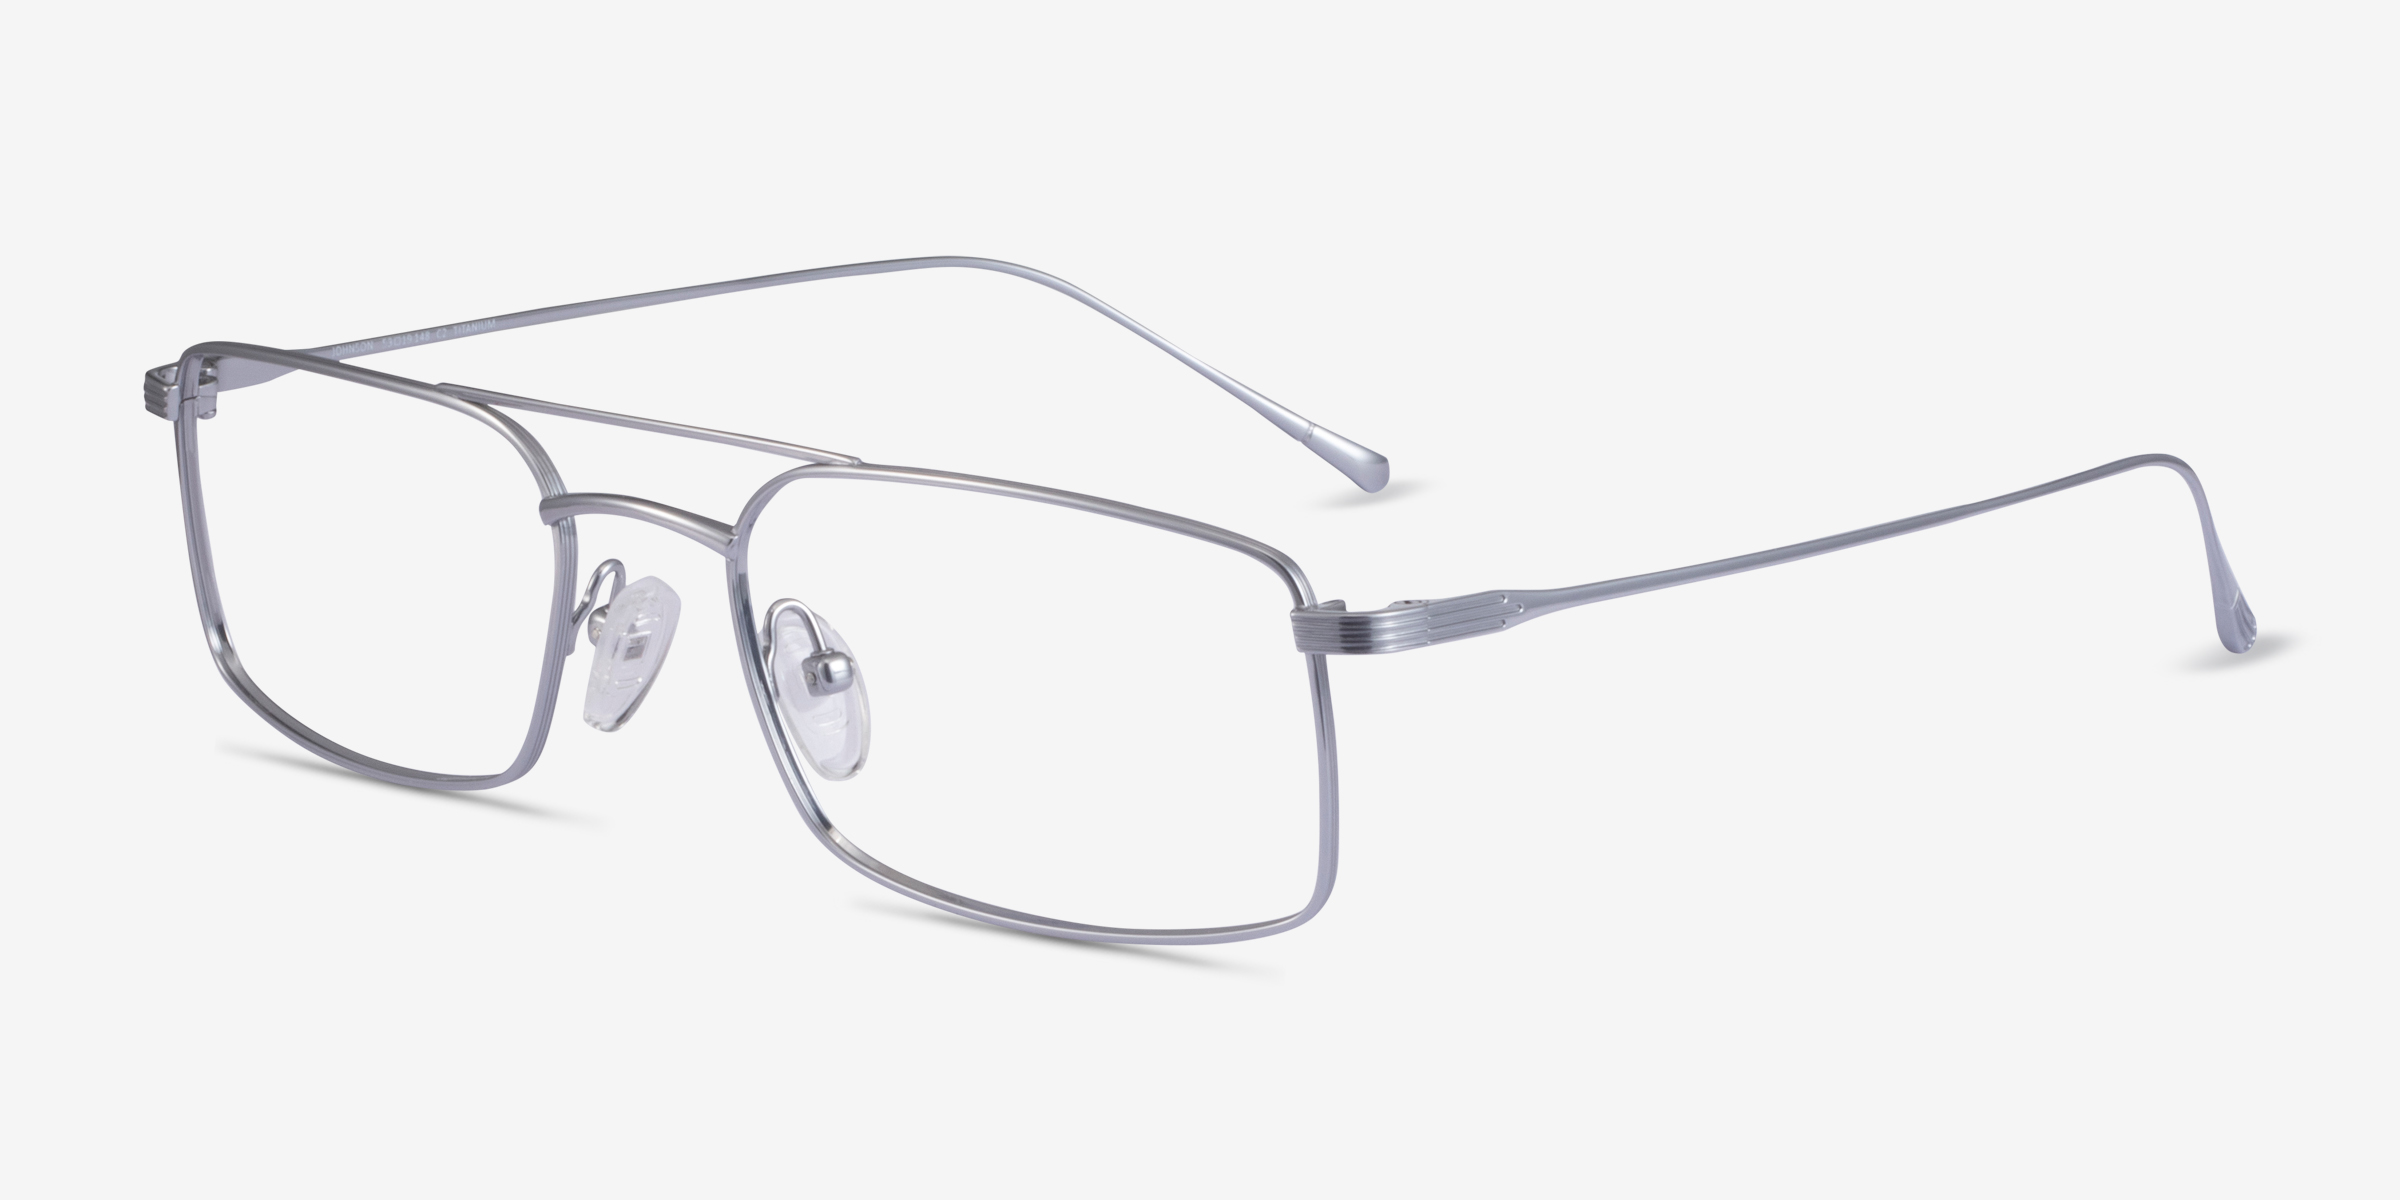 Johnson Aviator Silver Glasses For Men Eyebuydirect 